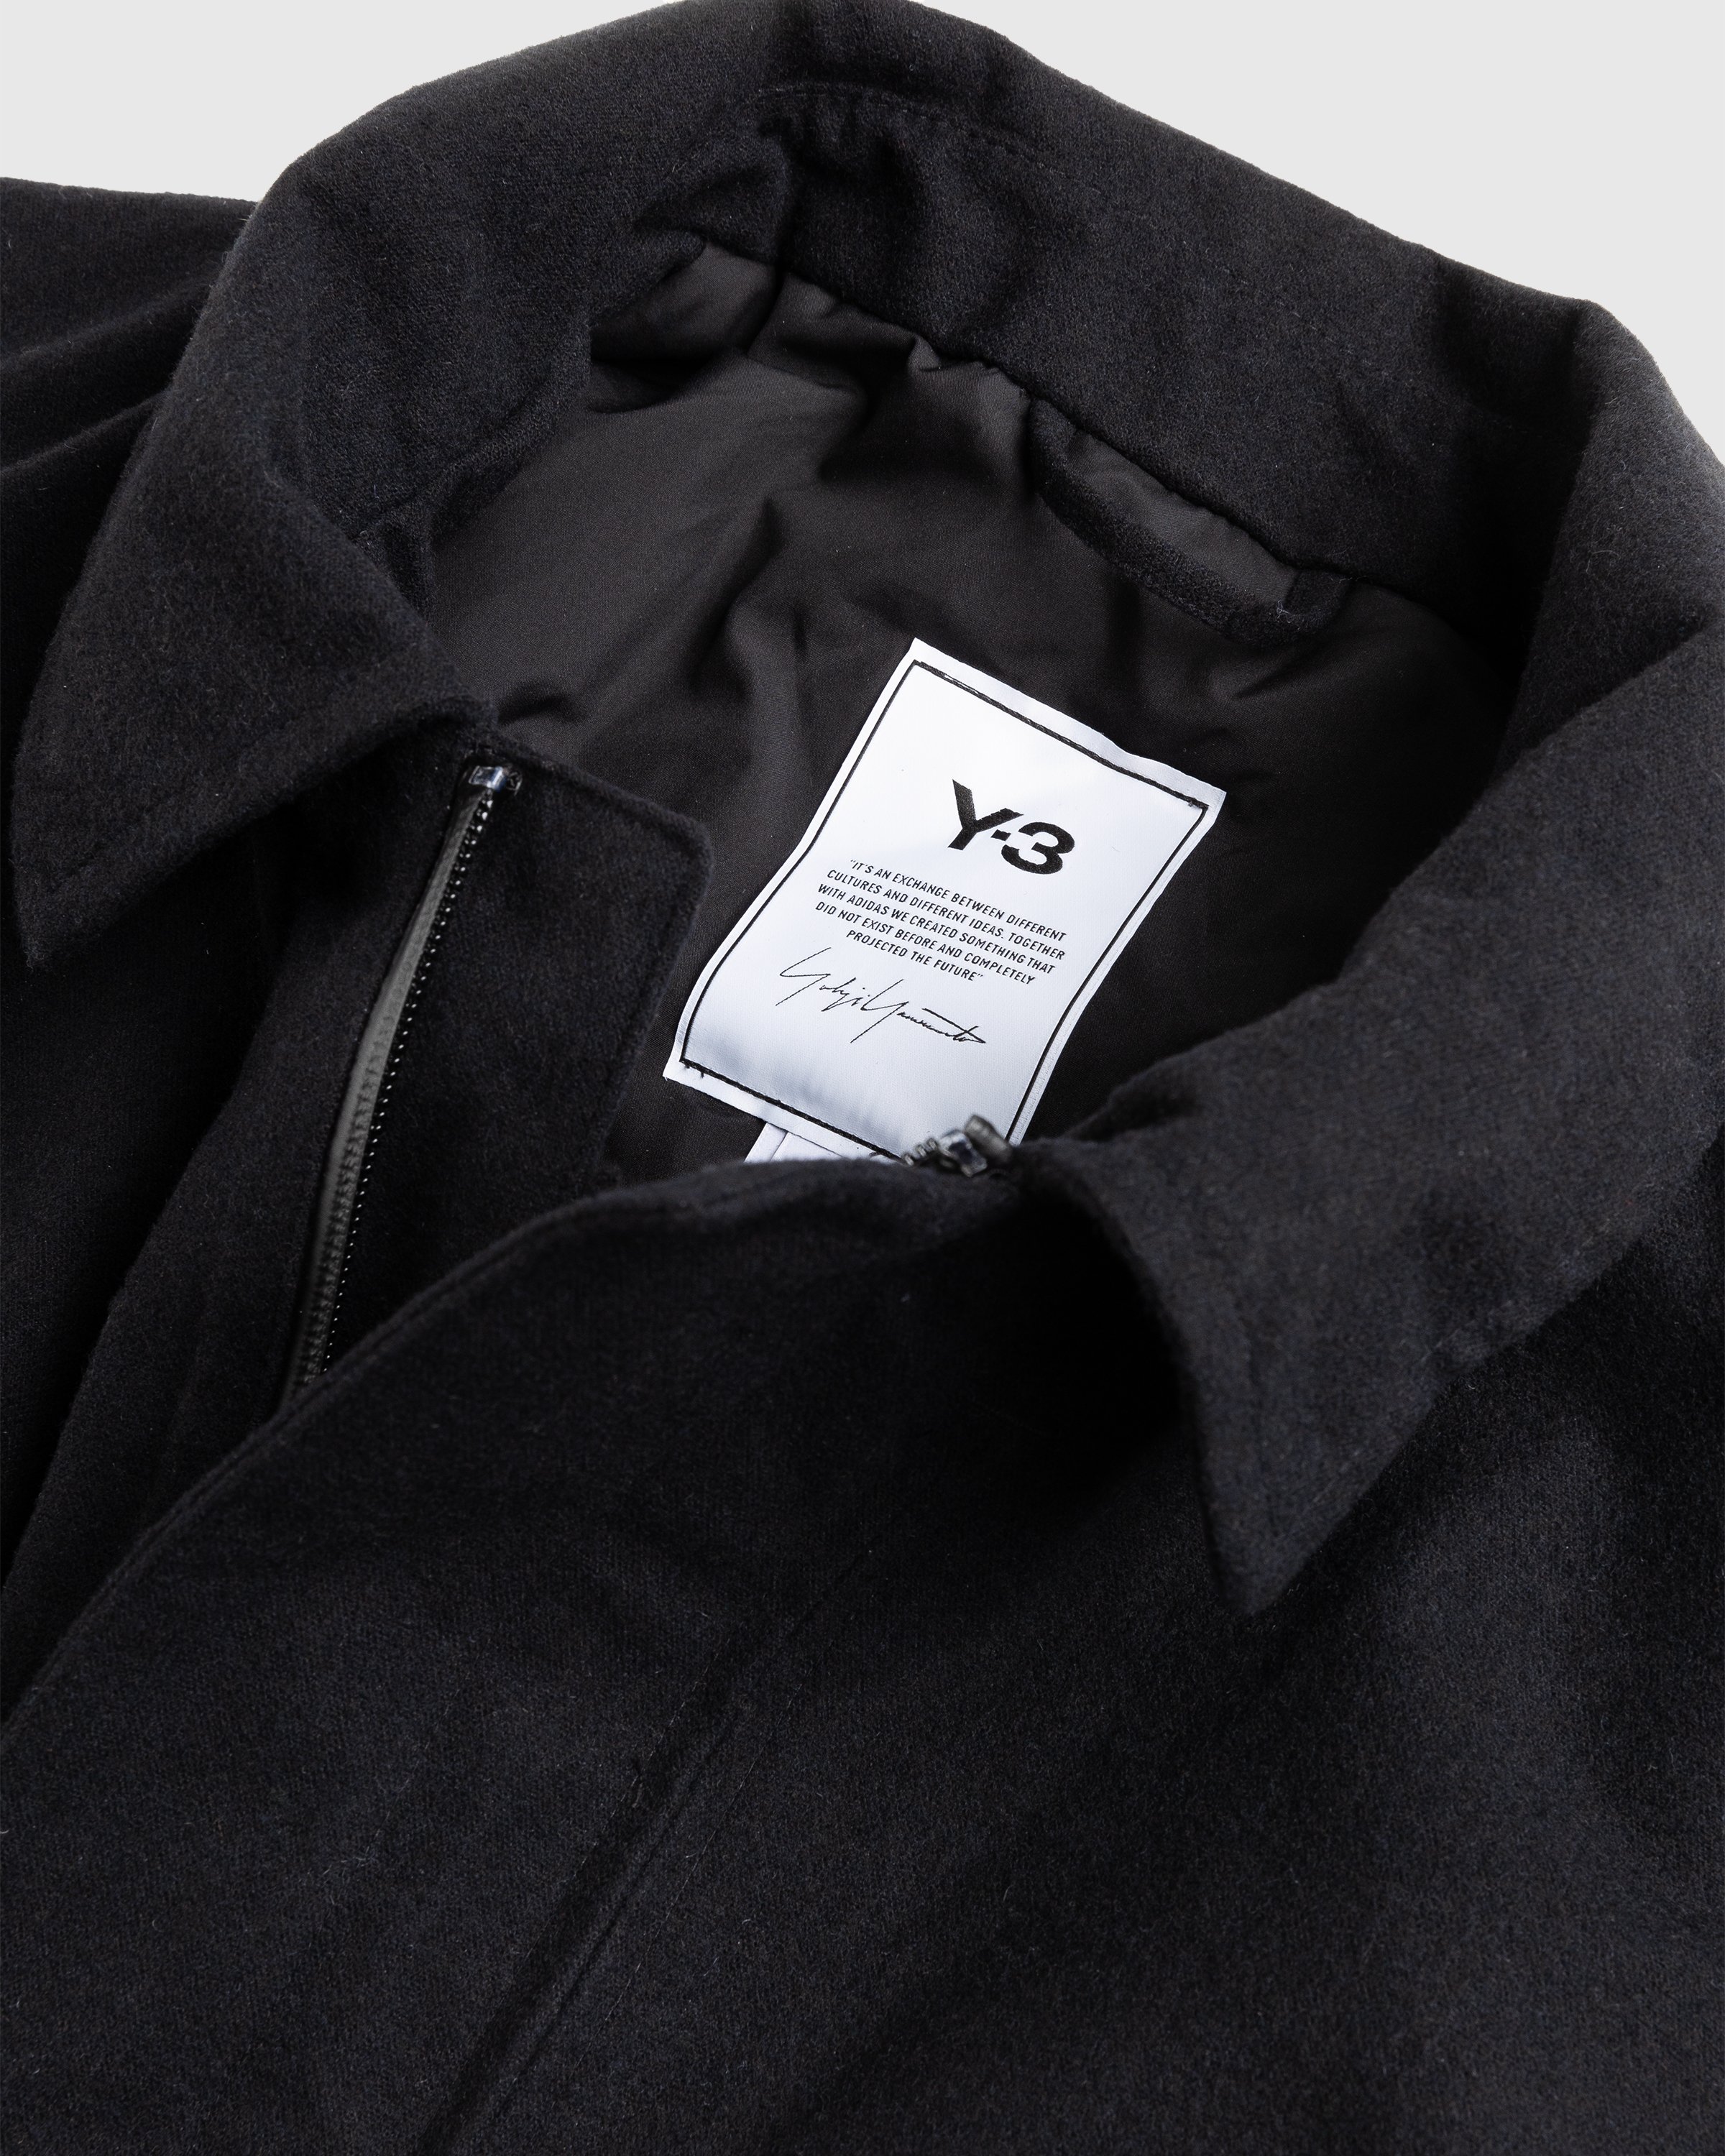 Y-3 - CL RGTX Coat - Clothing - Black - Image 4